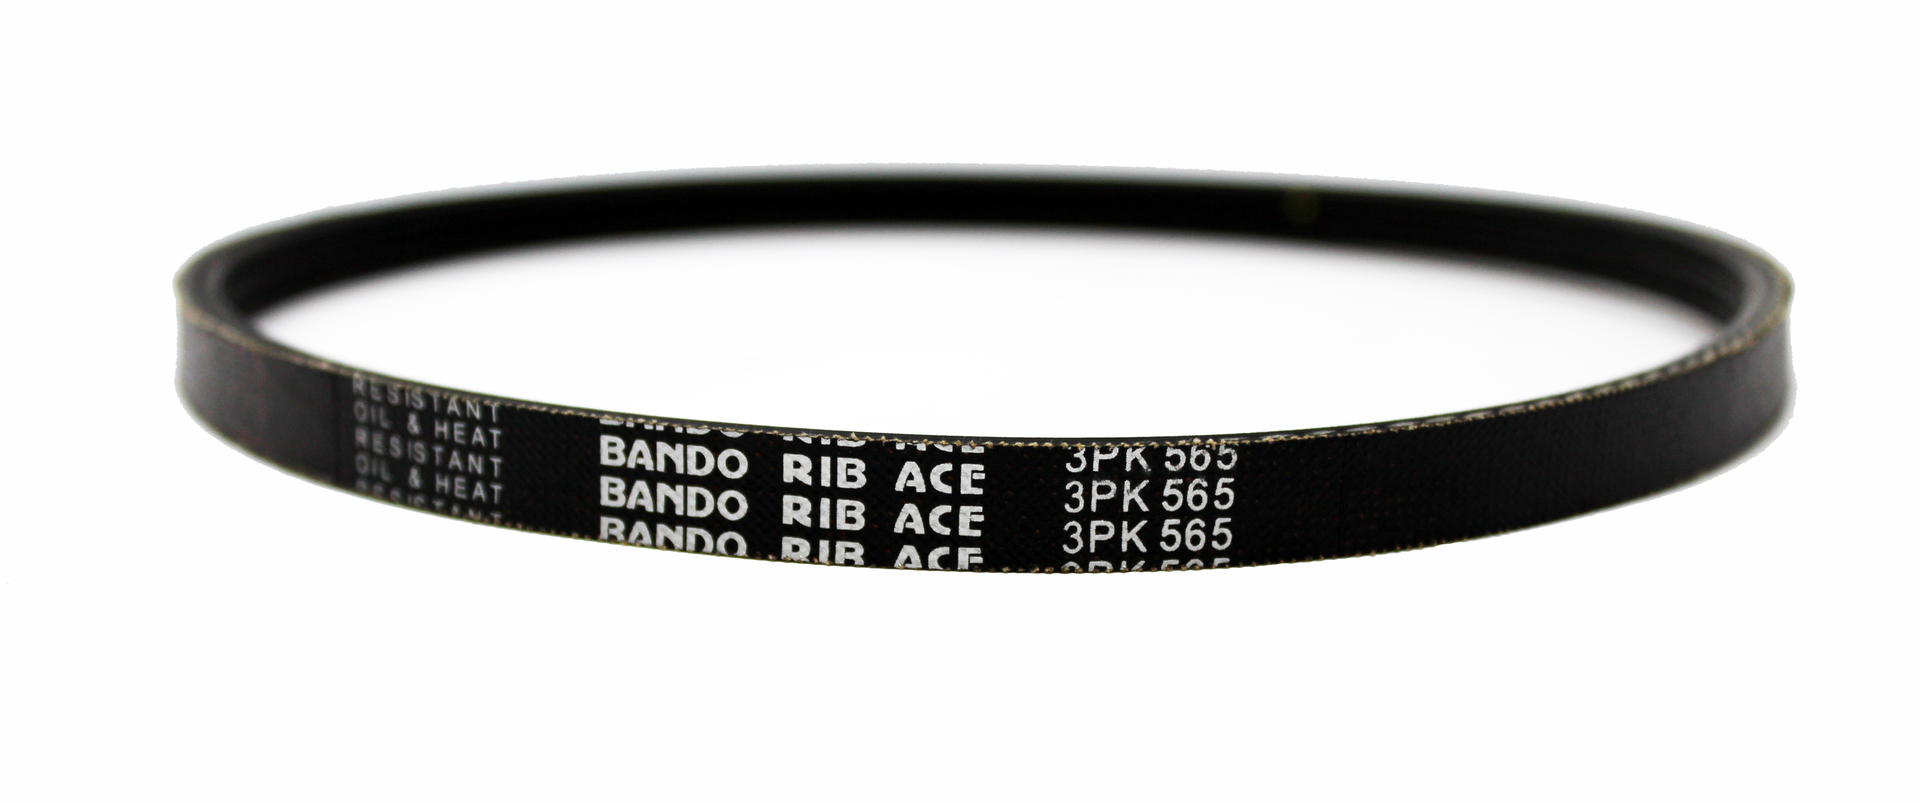 Bando Rib Ace Poly V Belt 190J19 